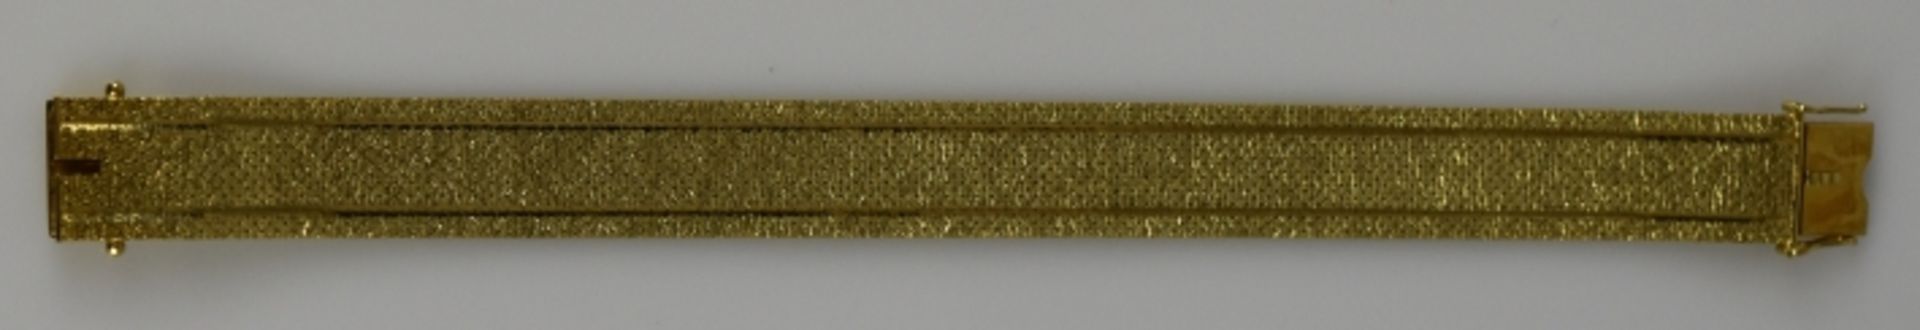 BREITES ARMBAND satiniert mit polierten Streifen, Steckverschluß und Sicherheitsachten, Gelbgold - Bild 2 aus 2